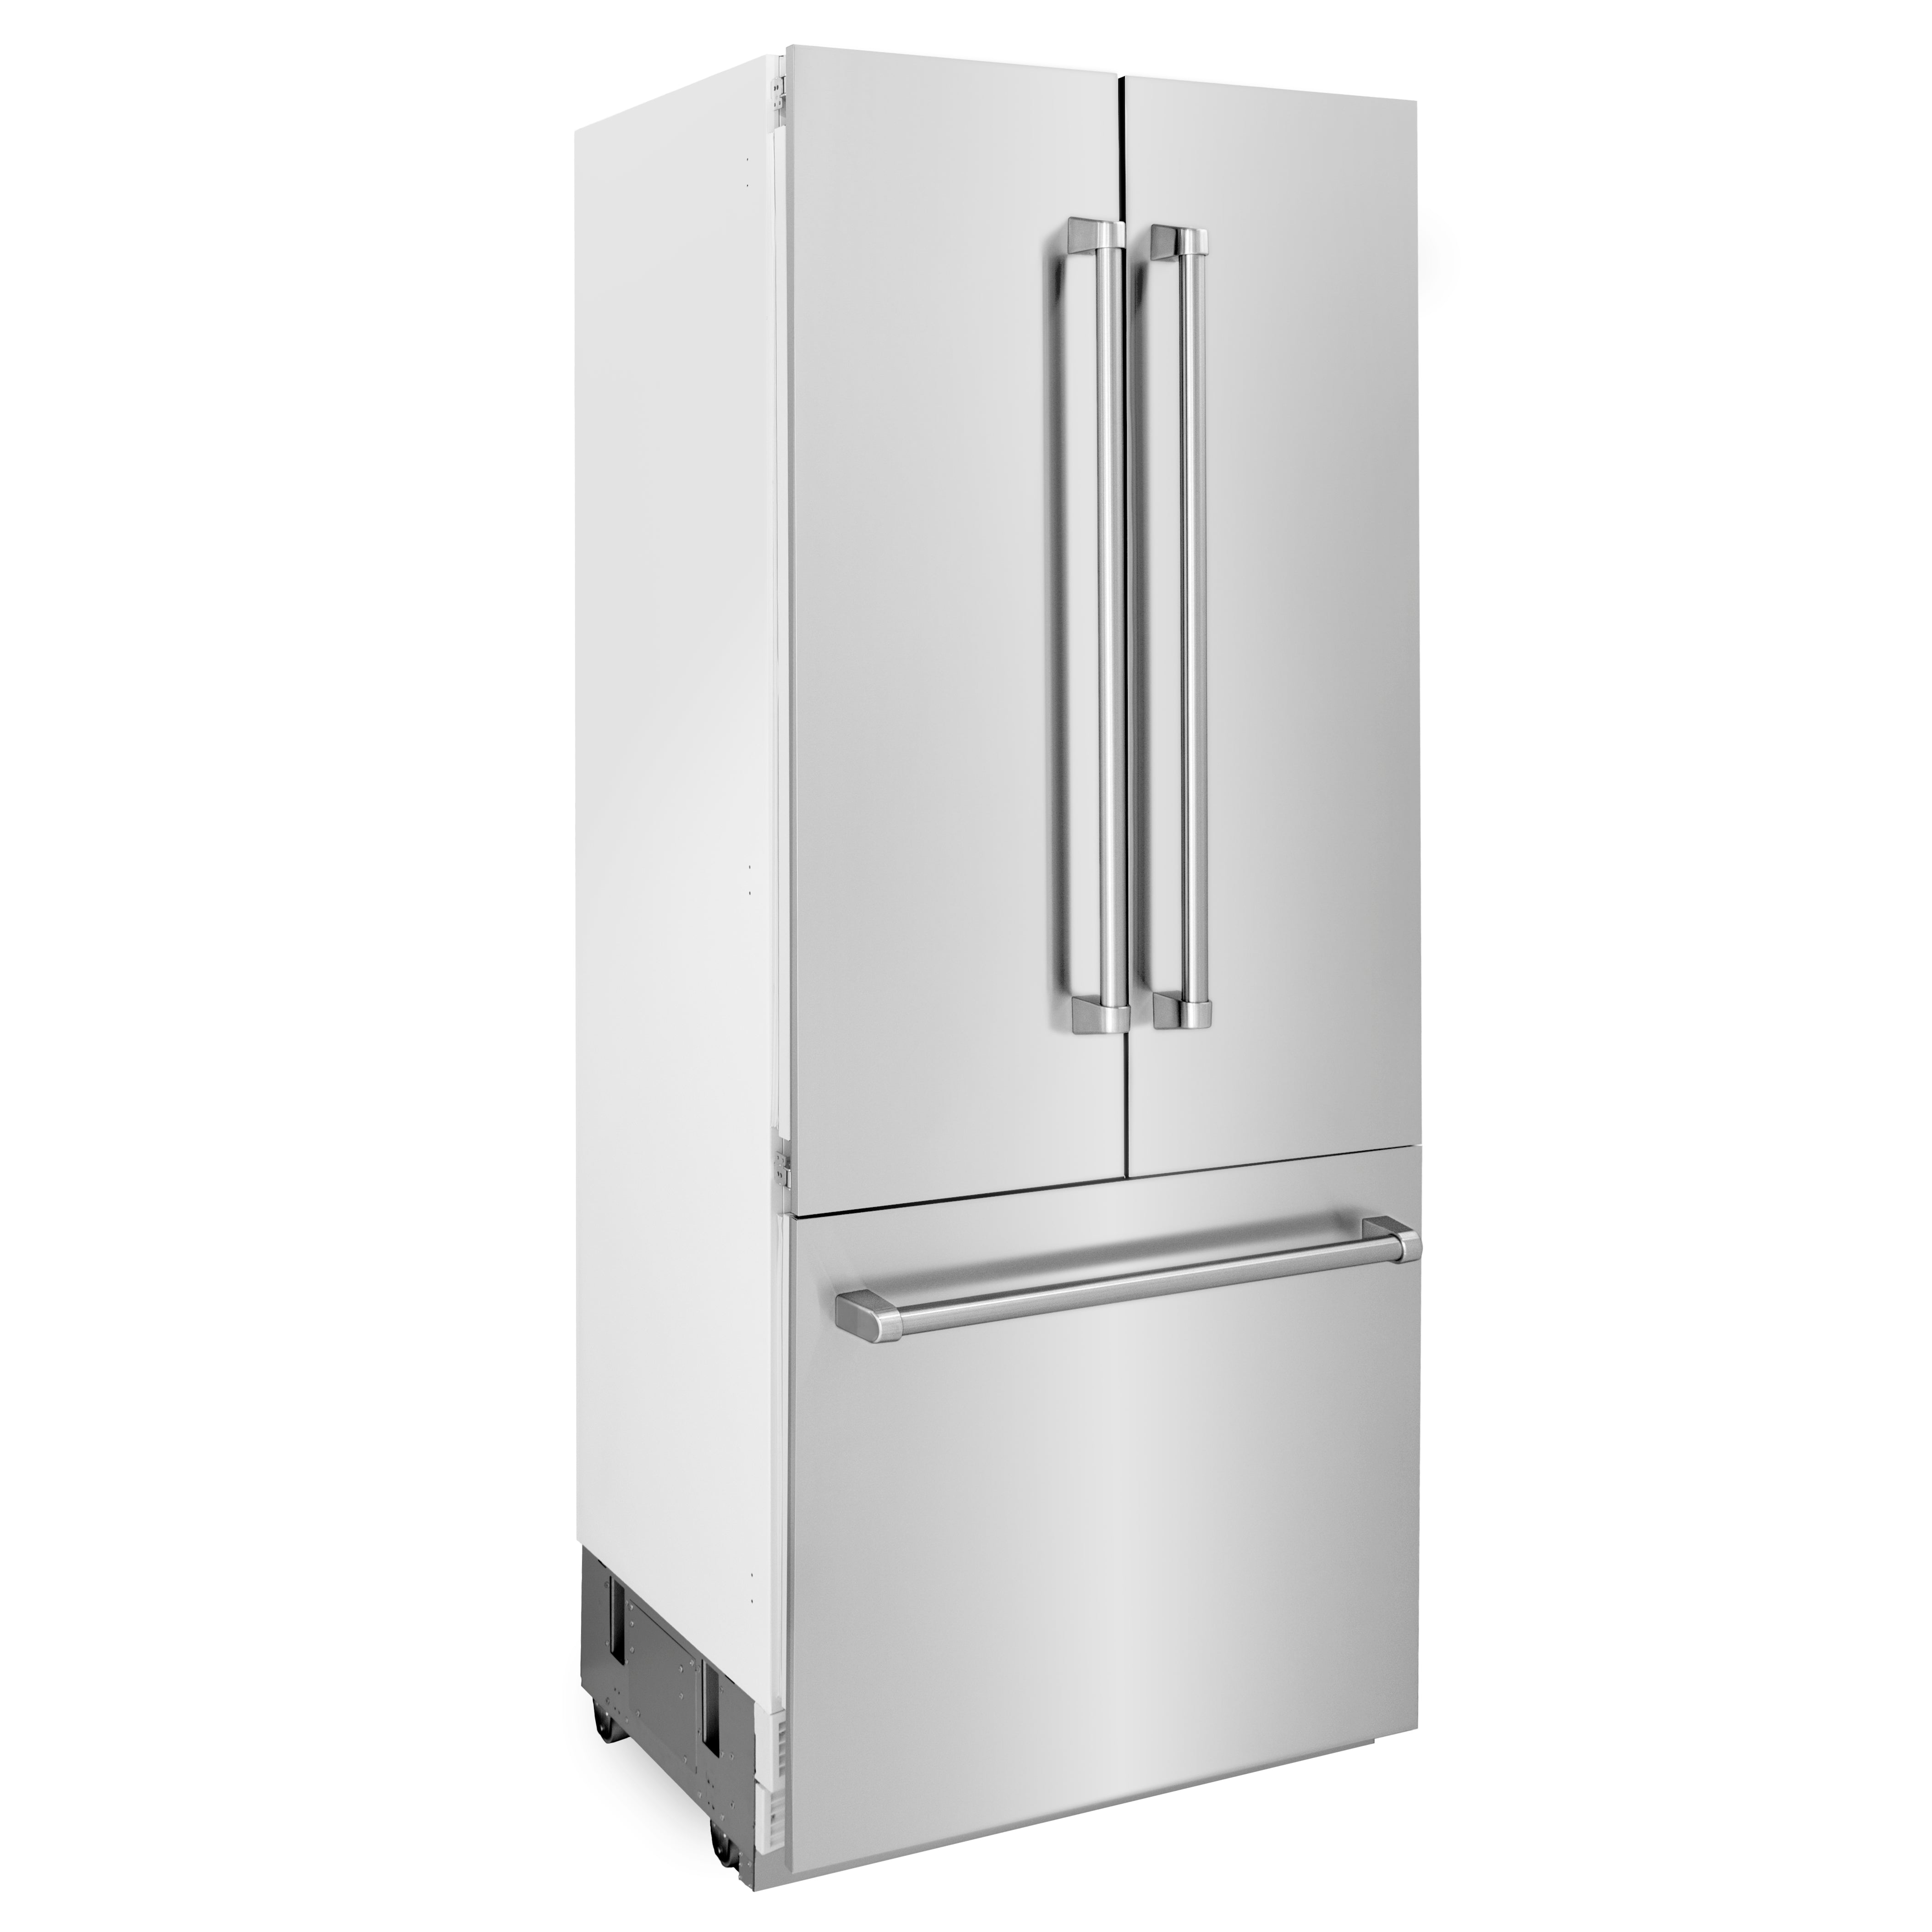 ZLINE 36 In. 19.6 cu. ft. Built-In 3-Door French Door Refrigerator with Internal Water and Ice Dispenser in Stainless Steel